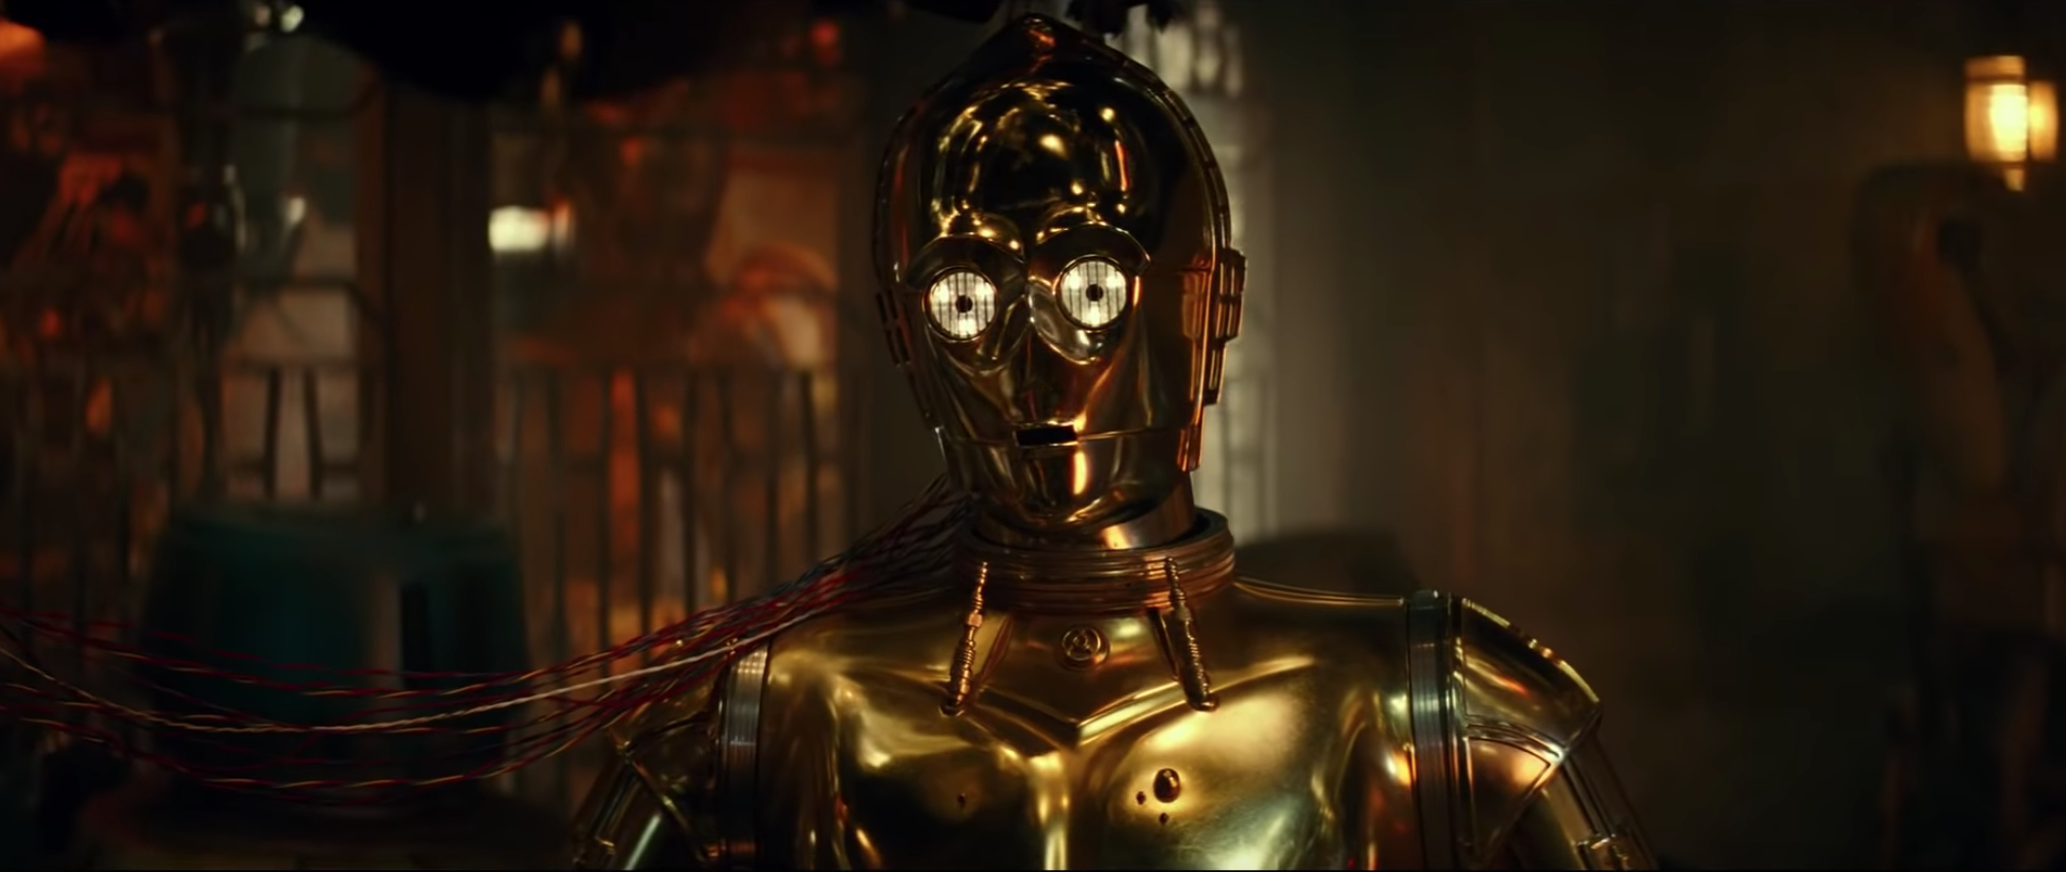 Star Wars: The Rise of Skywalker: Trailer Breakdown